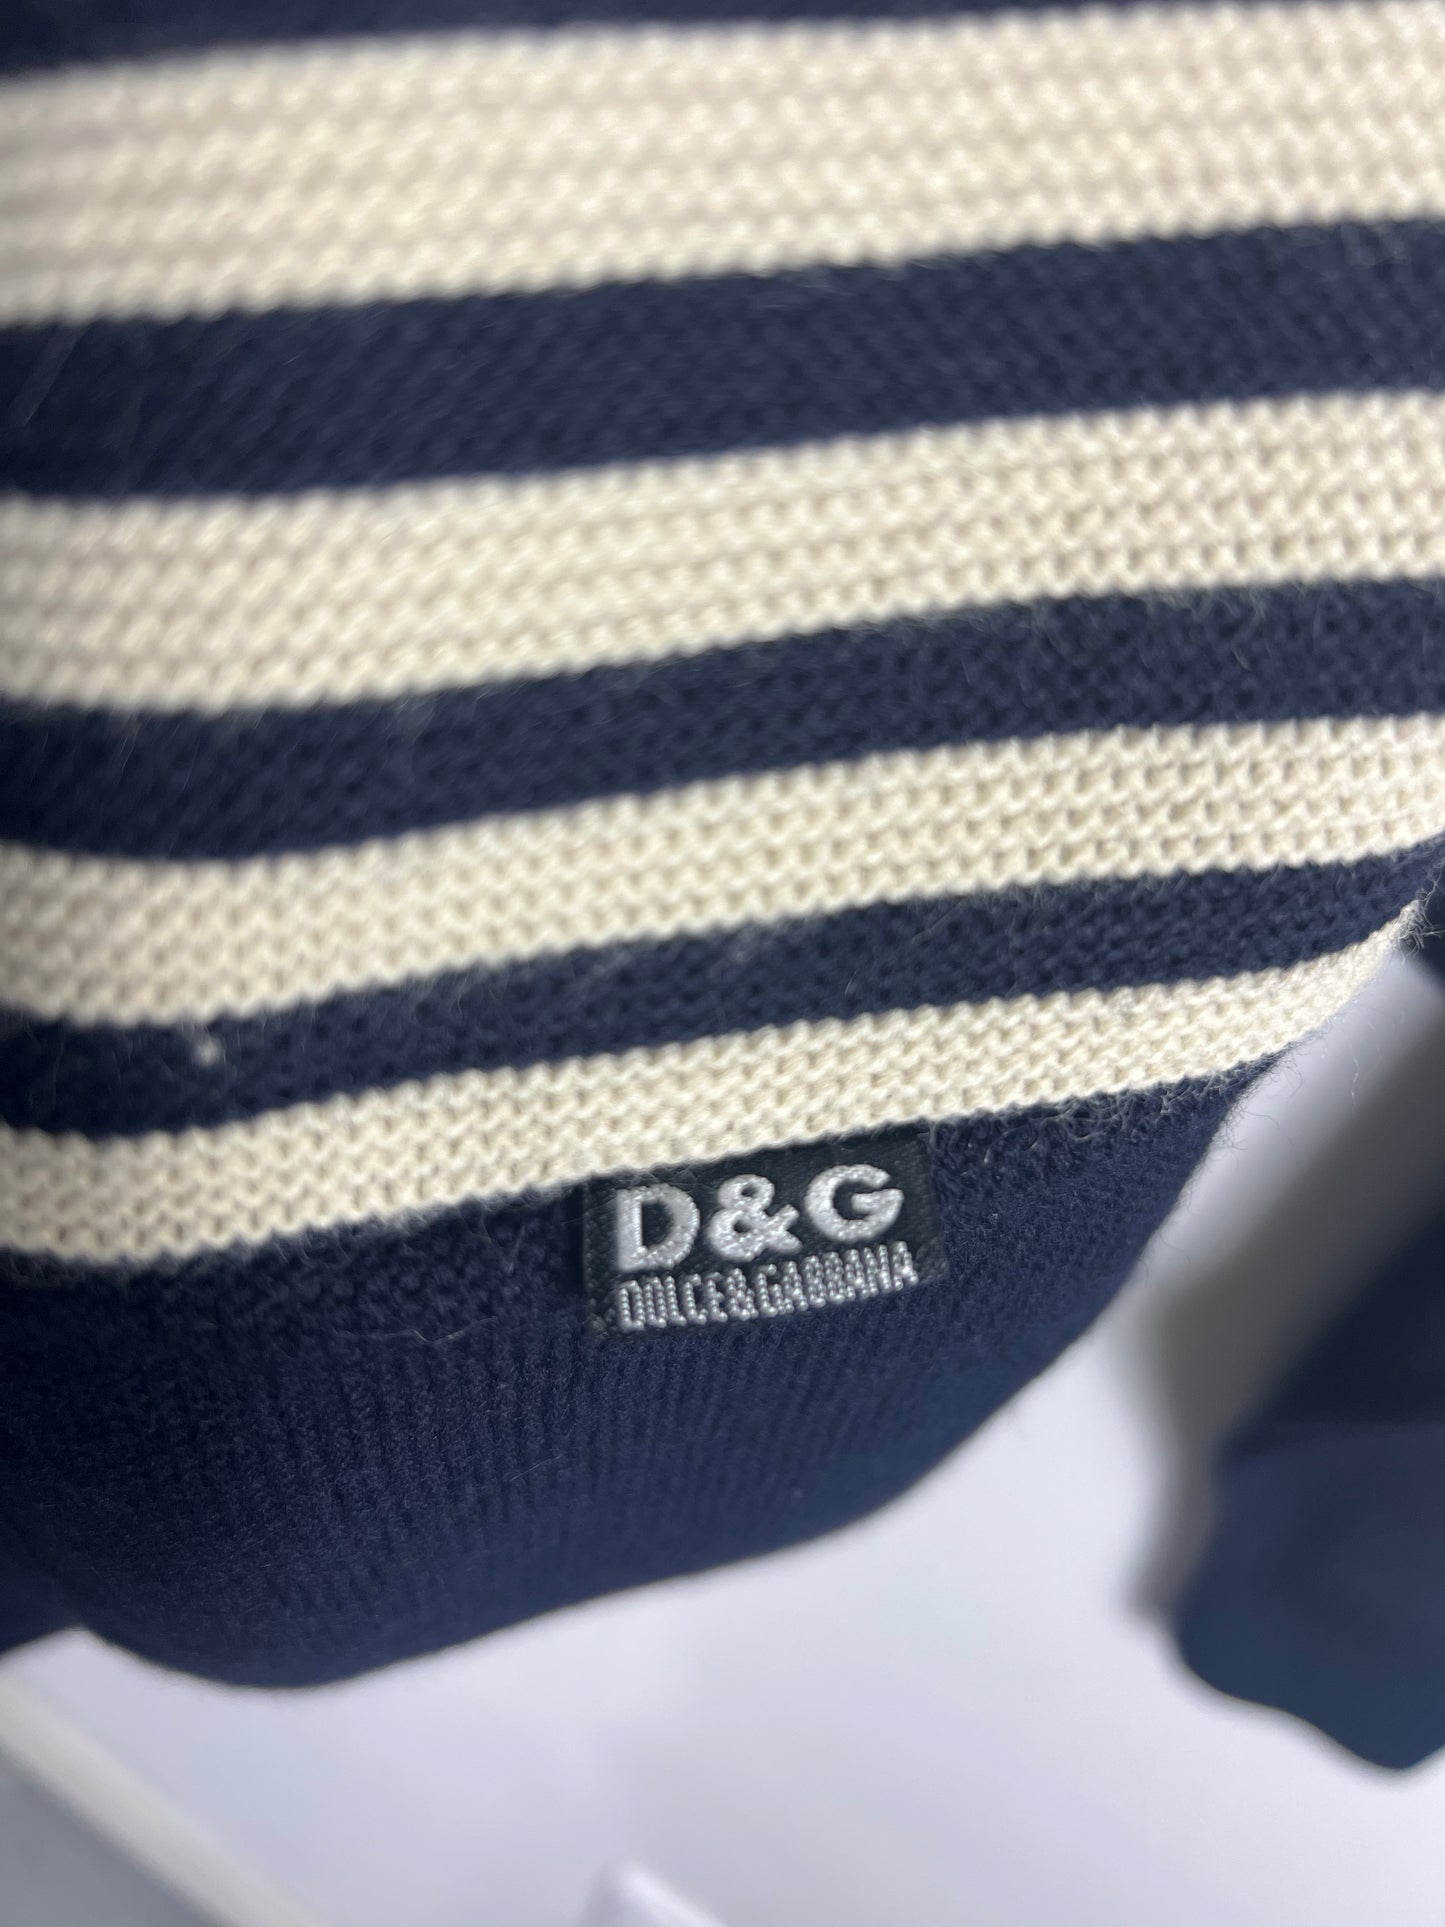 D&G